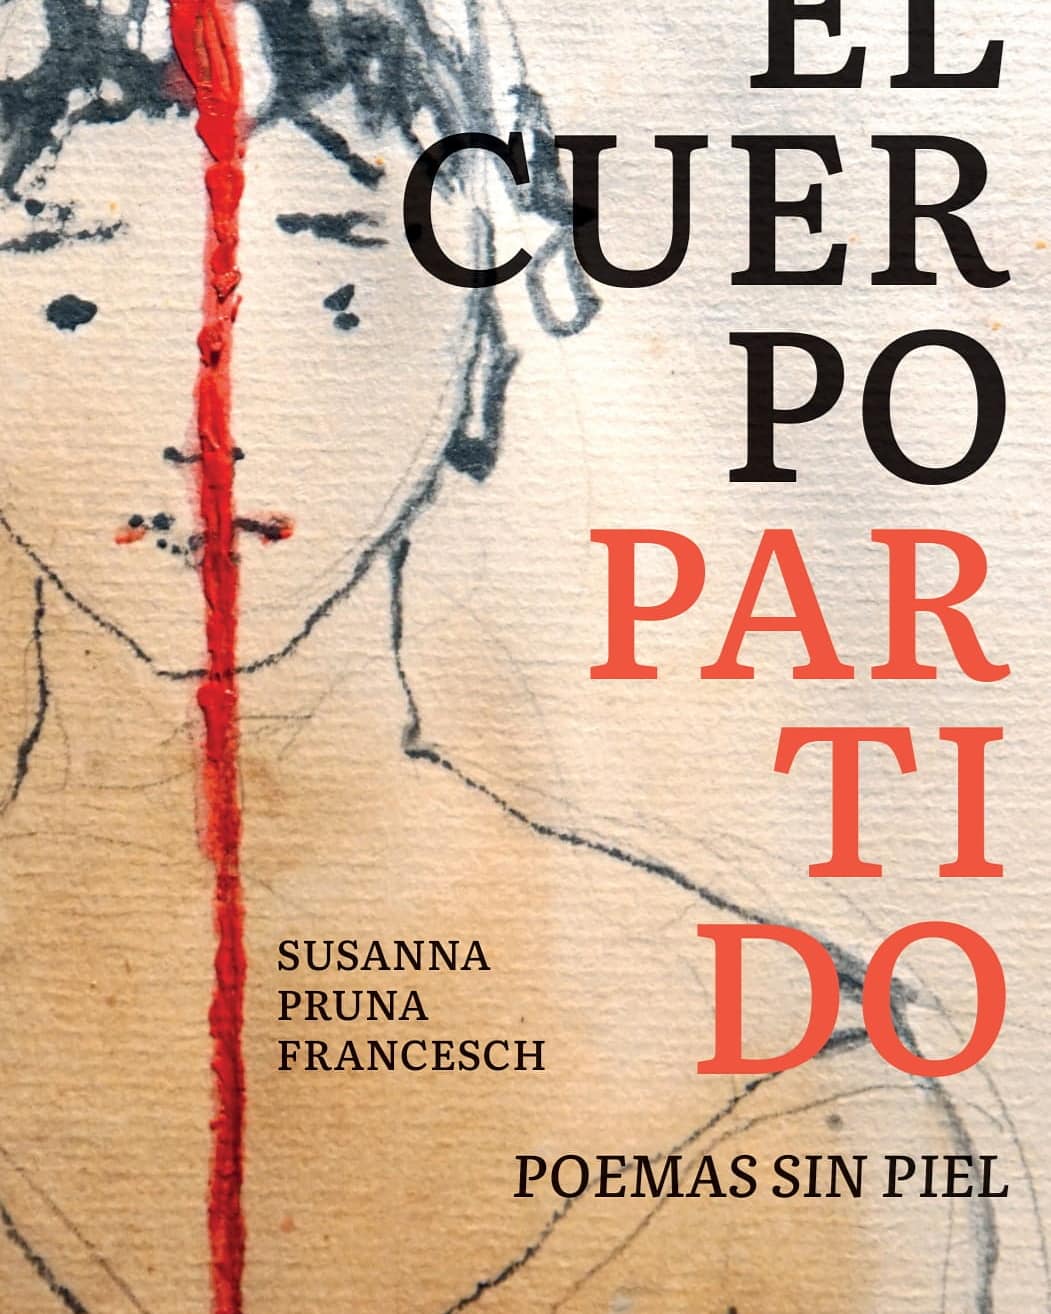 Informació de la presentació del llibre El cuerpo partido. Poemas sin piel, de Susanna Pruna